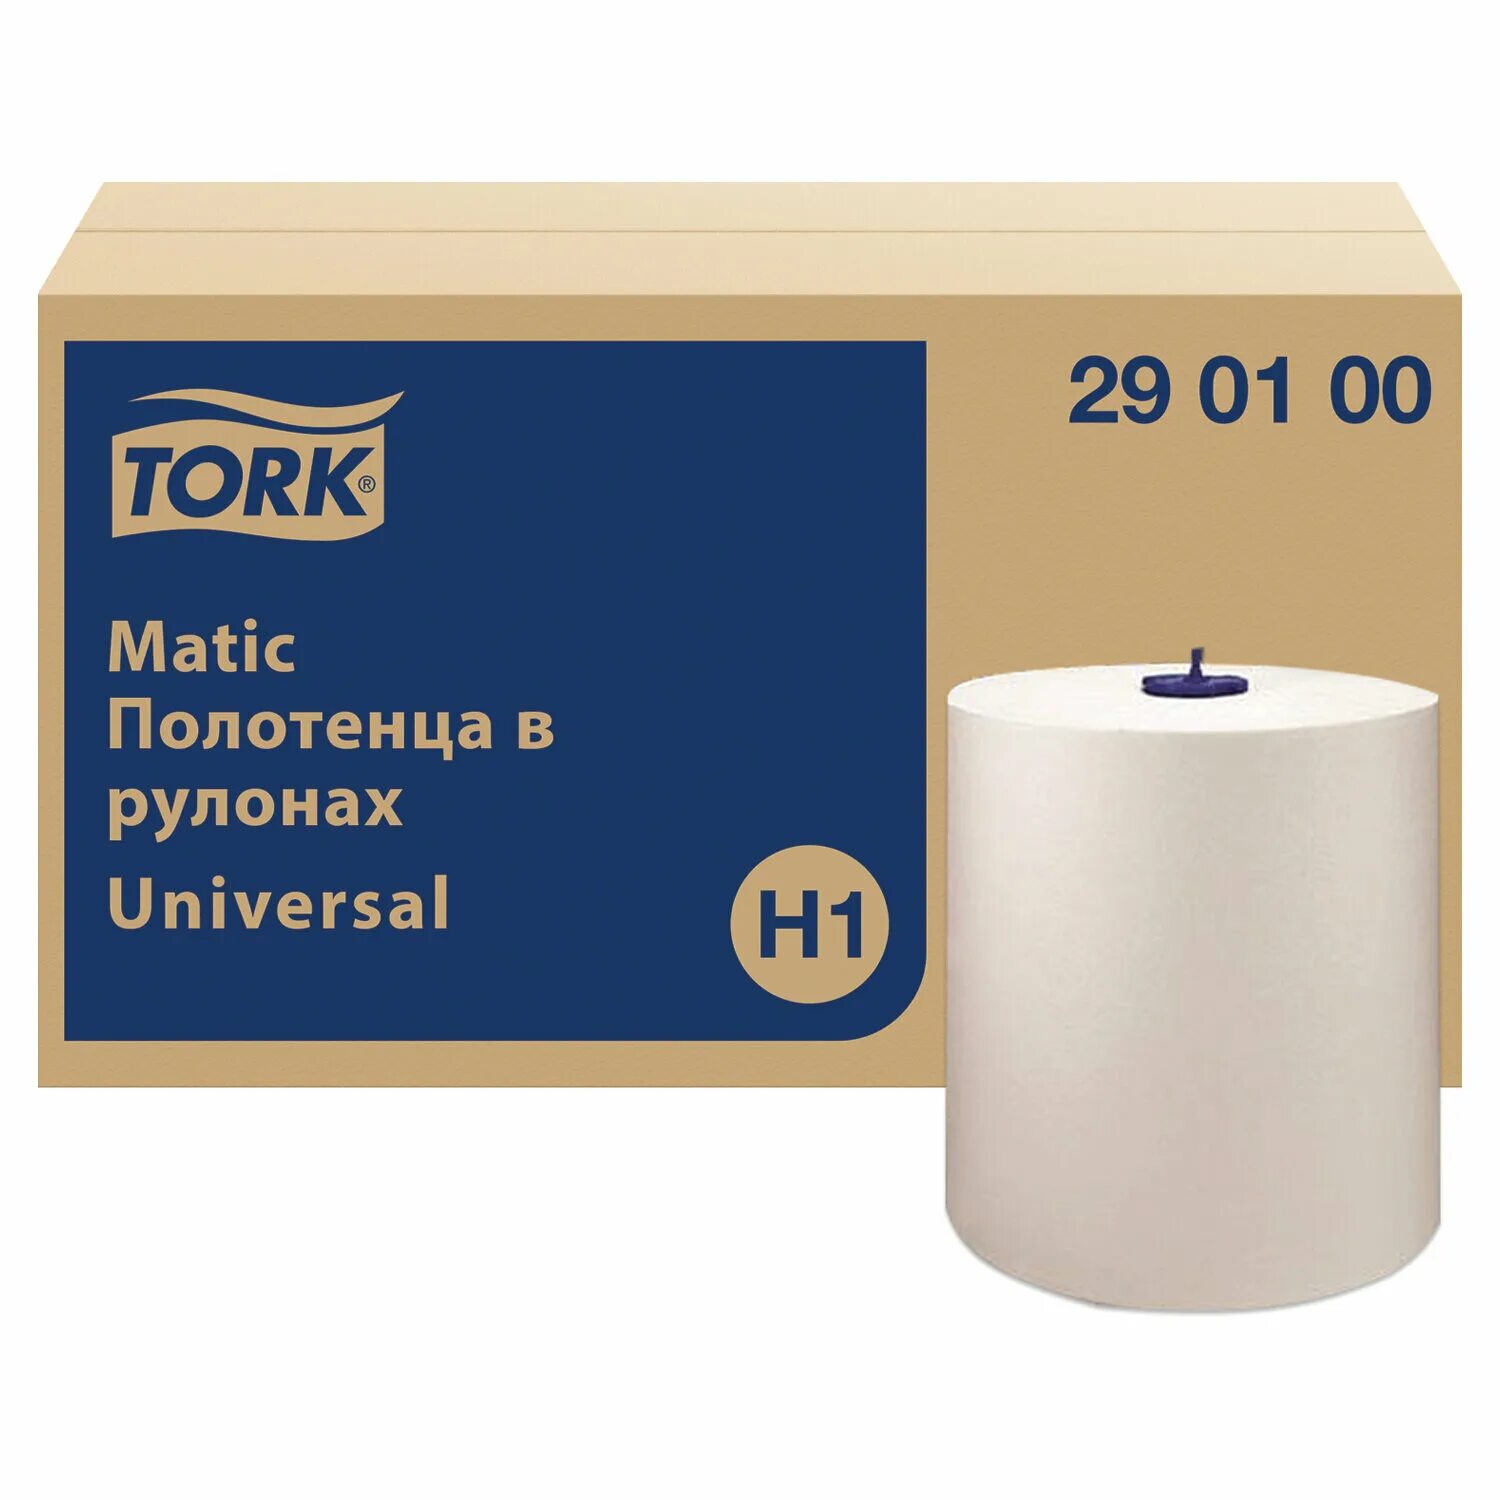 Бумажные полотенца торк h1. Tork матик 1сл. Полотенца бумажные в рулоне Tork Universal 290059, h1, 1-слойные, белые. 290100 Торк.